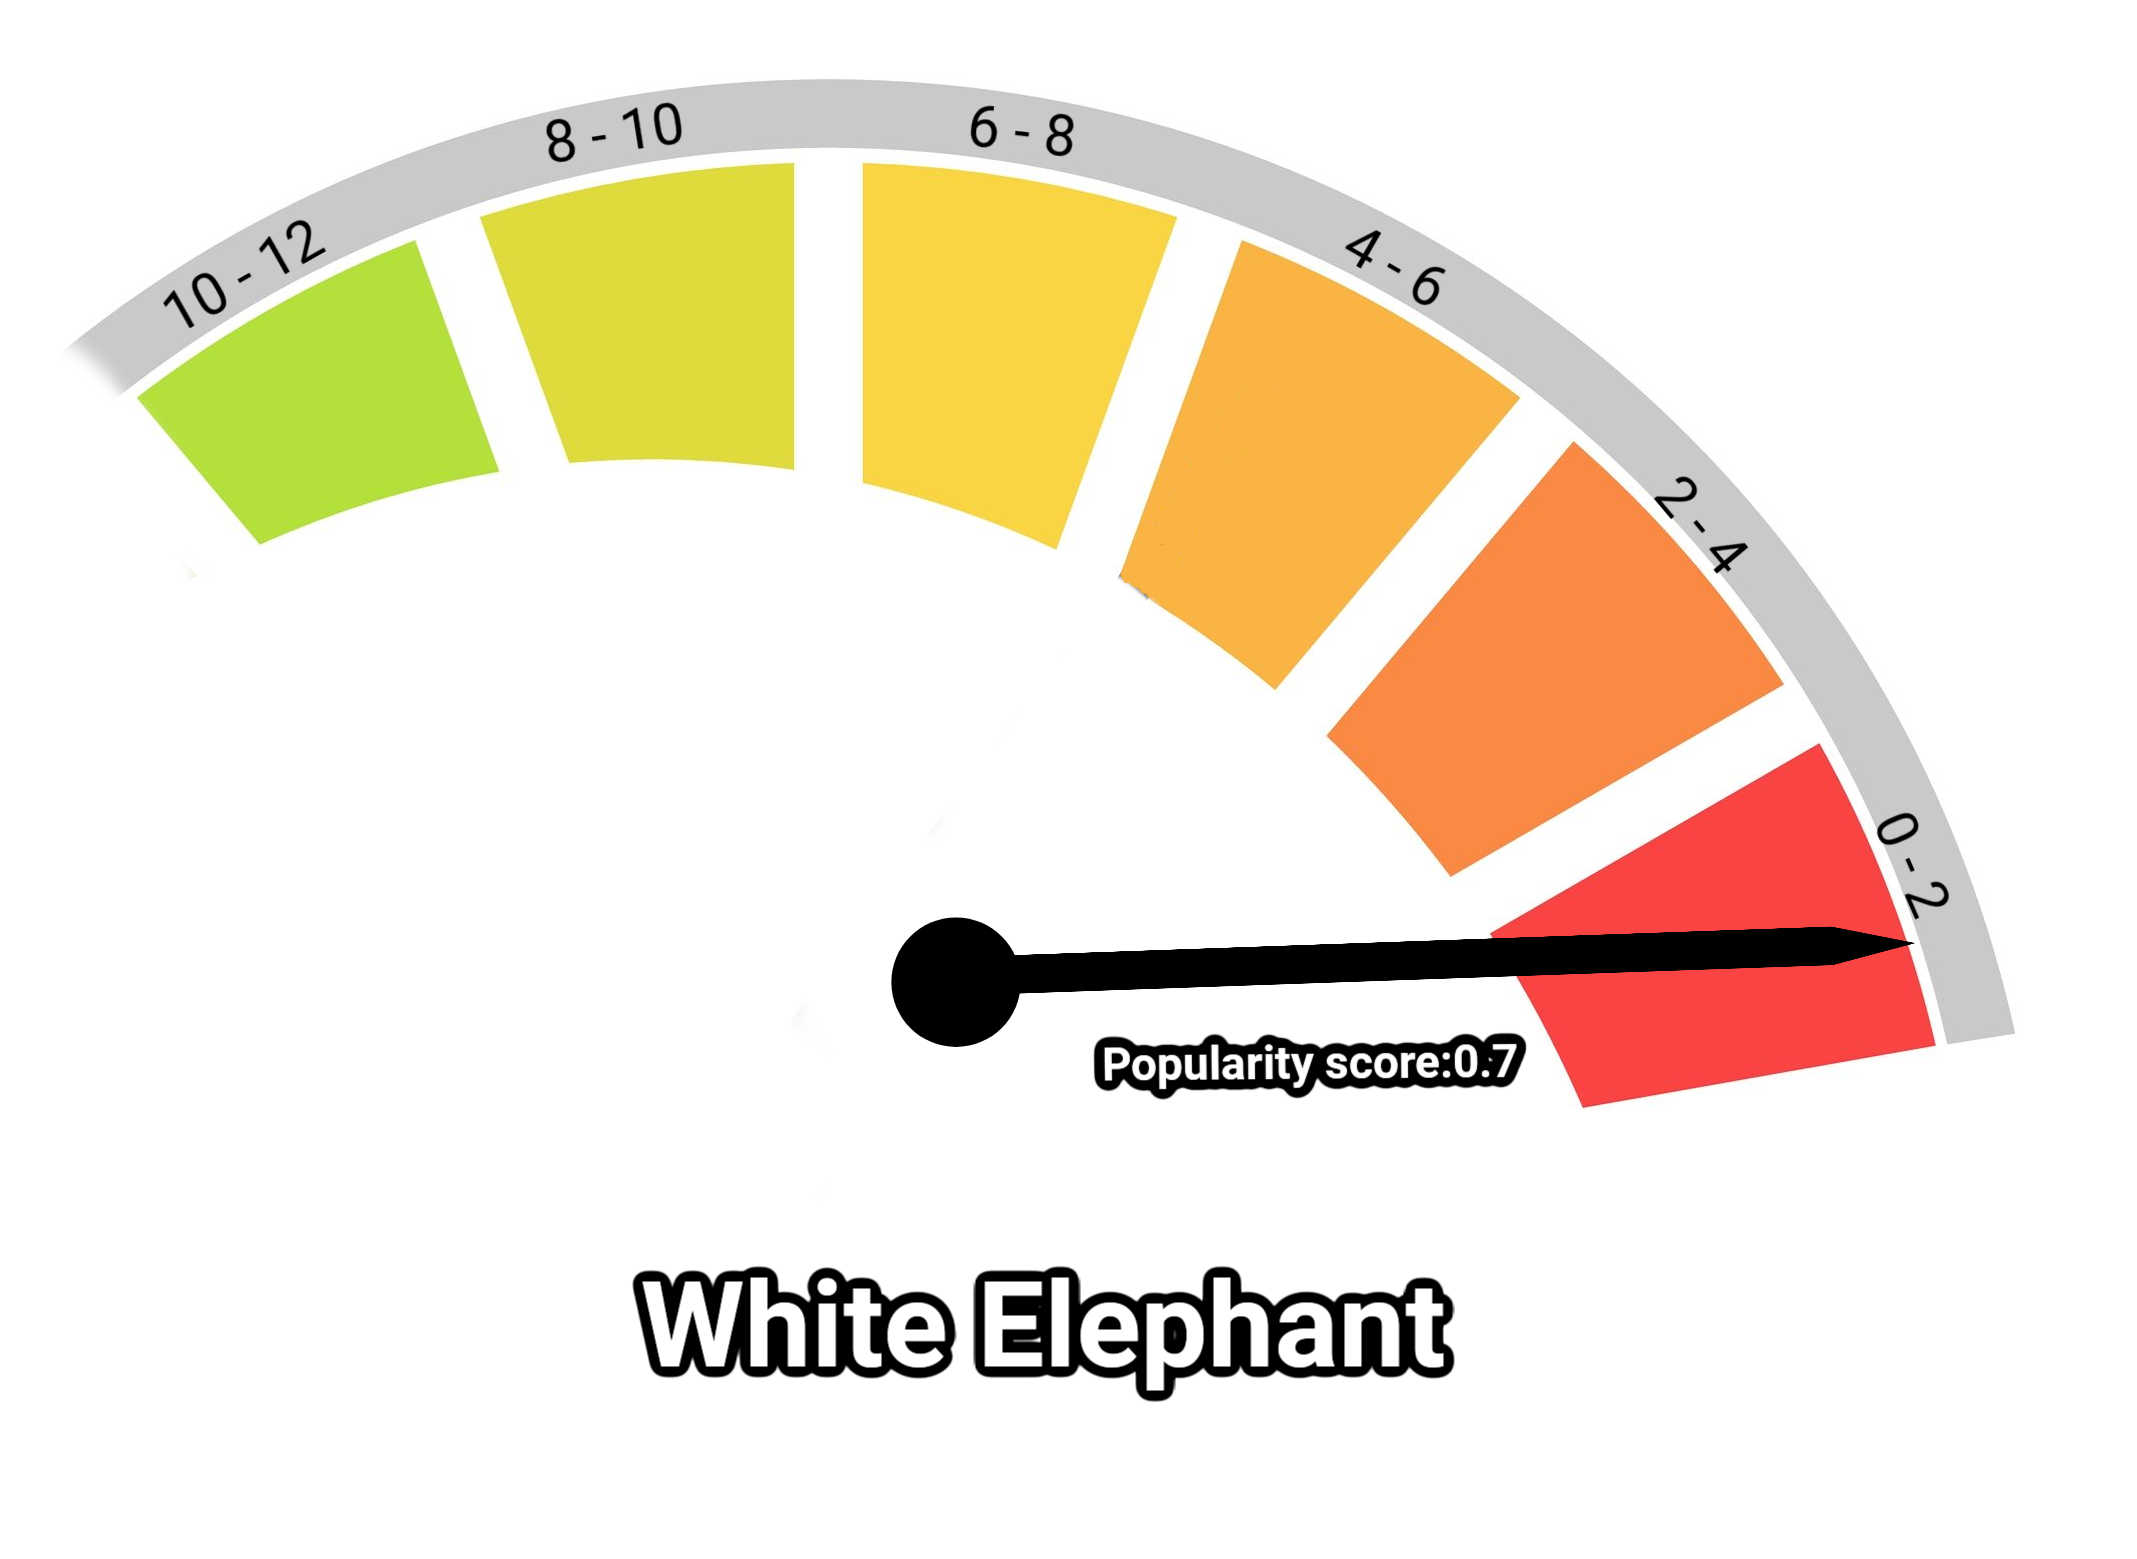 image of white elephant kratom popularity score